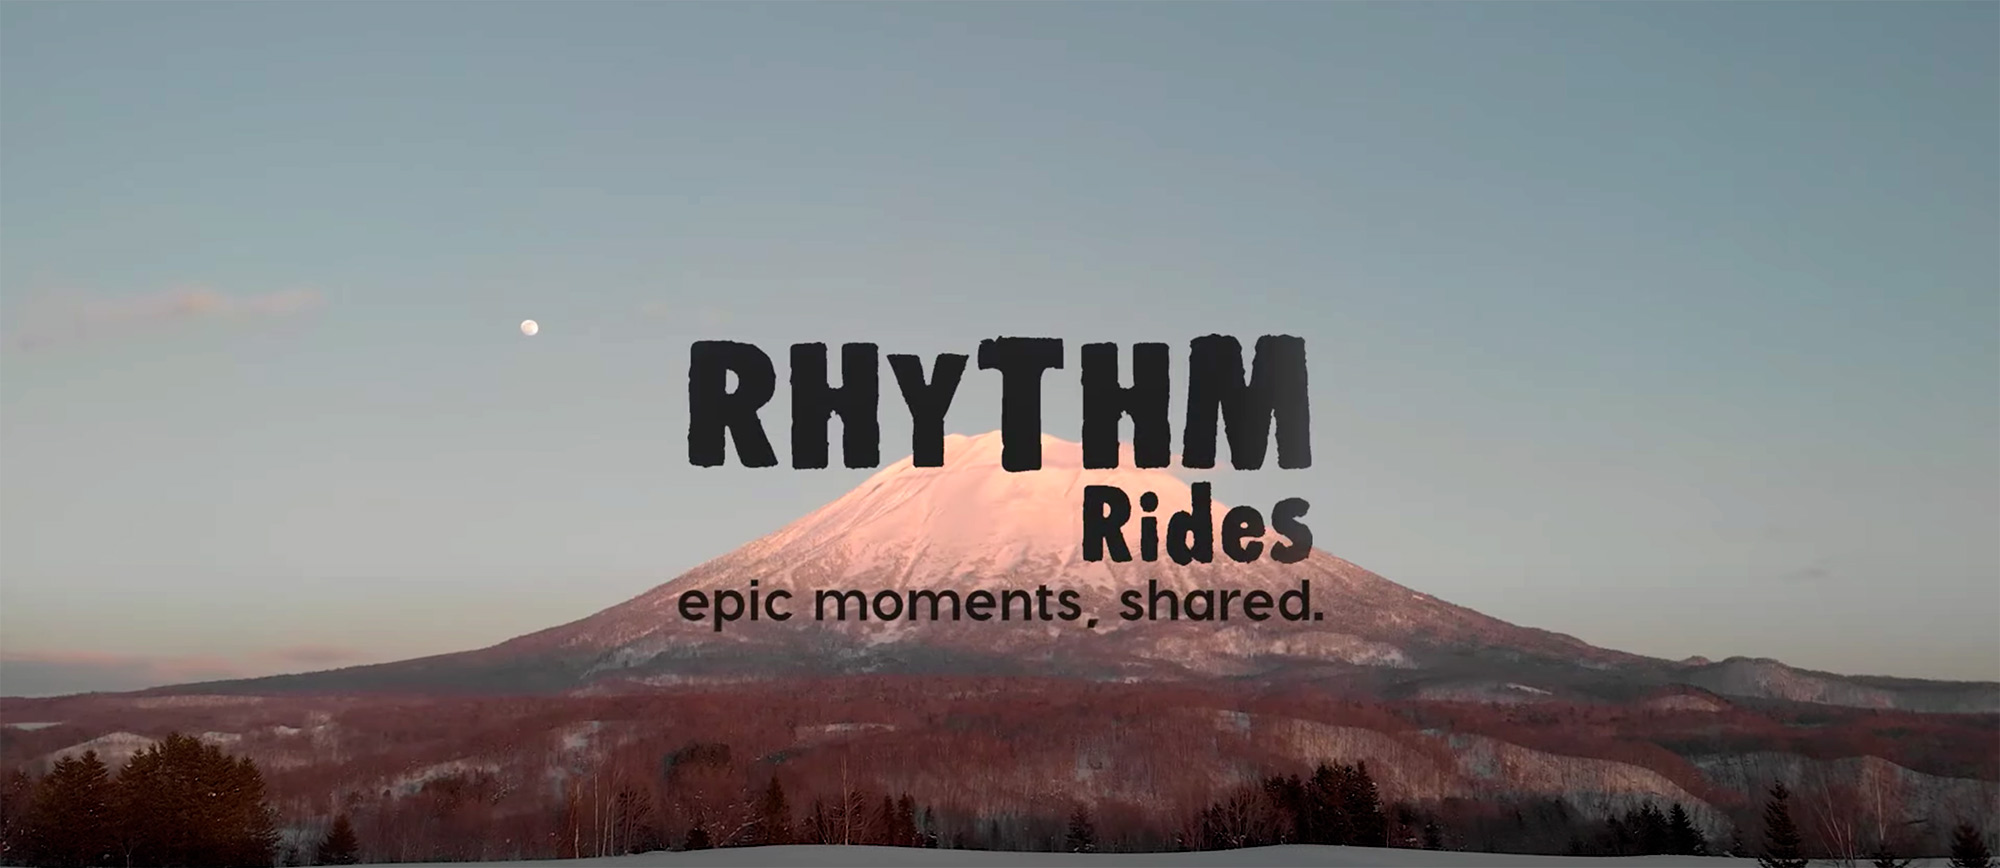 Rhythm Rides